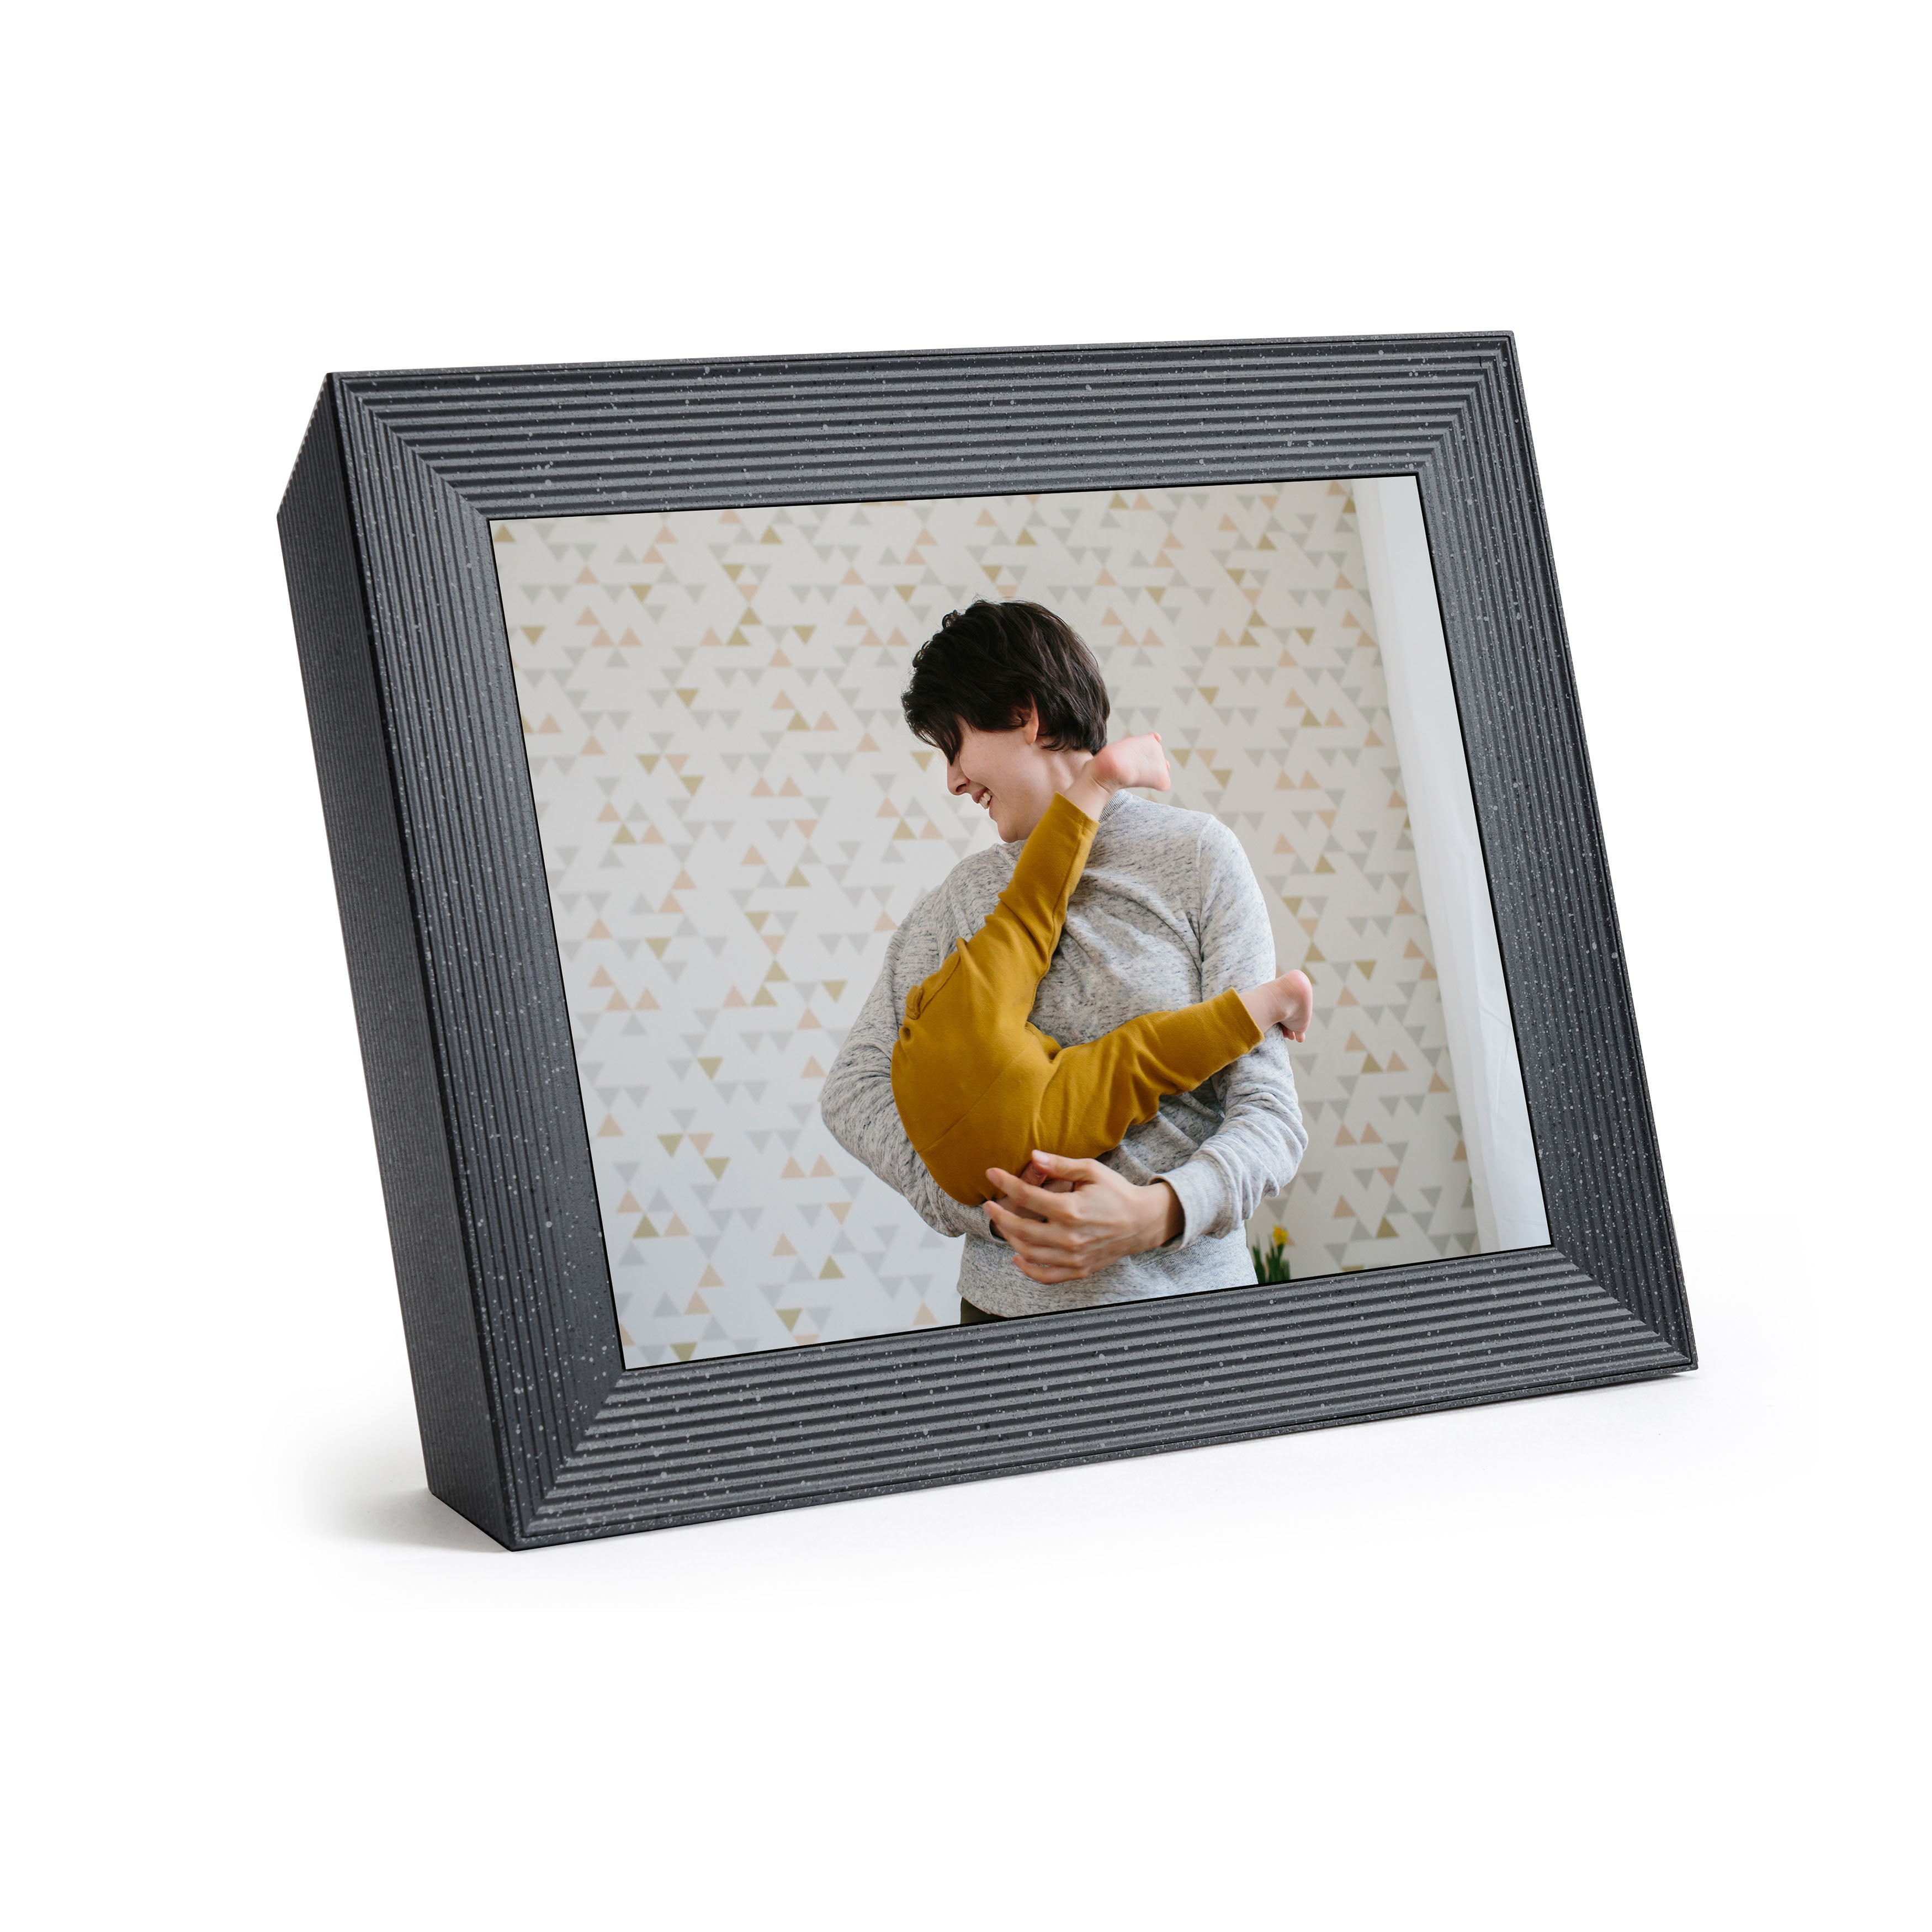 Mason Luxe by Aura Frames 9.7 inch HD Wi-Fi Digital Photo Frame 